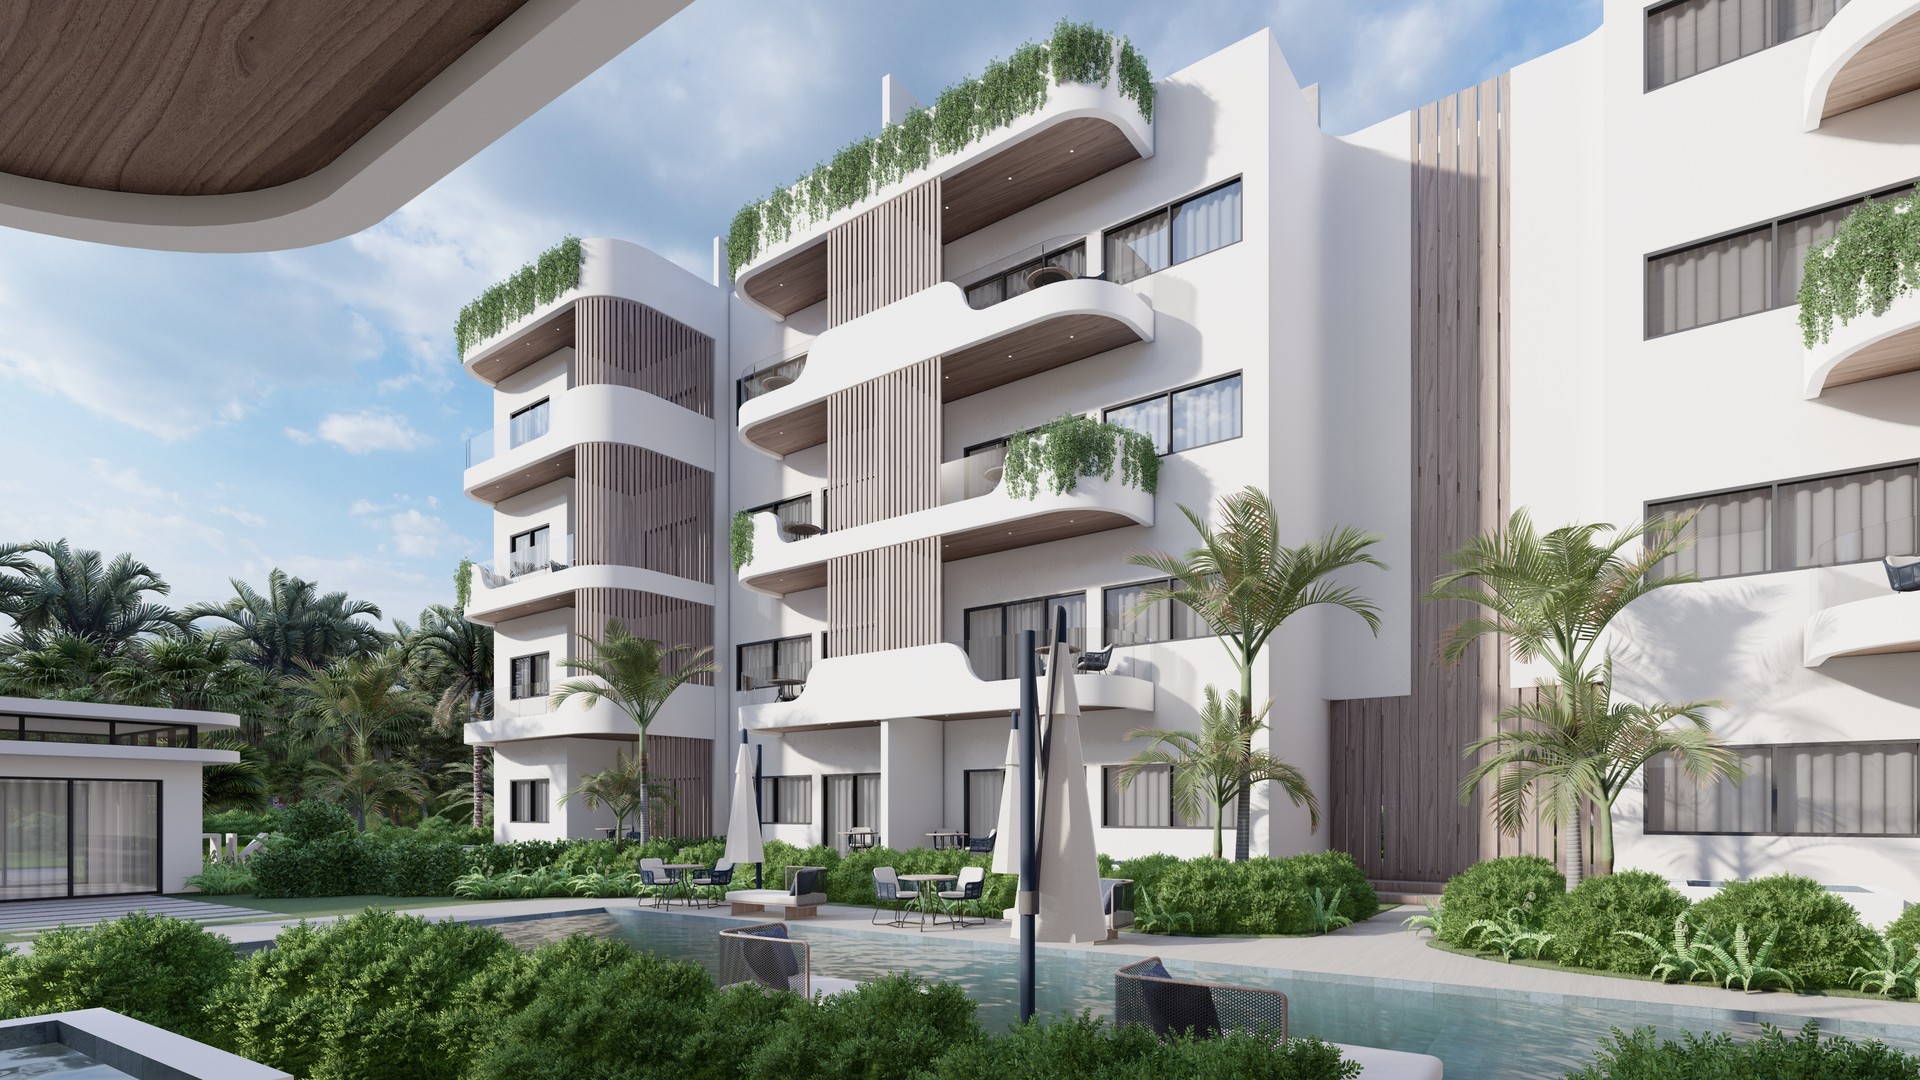 apartamentos - Vista Cana, US$117,000
Complejo armonico y exclusivo de solo 40 apartamentos. 0